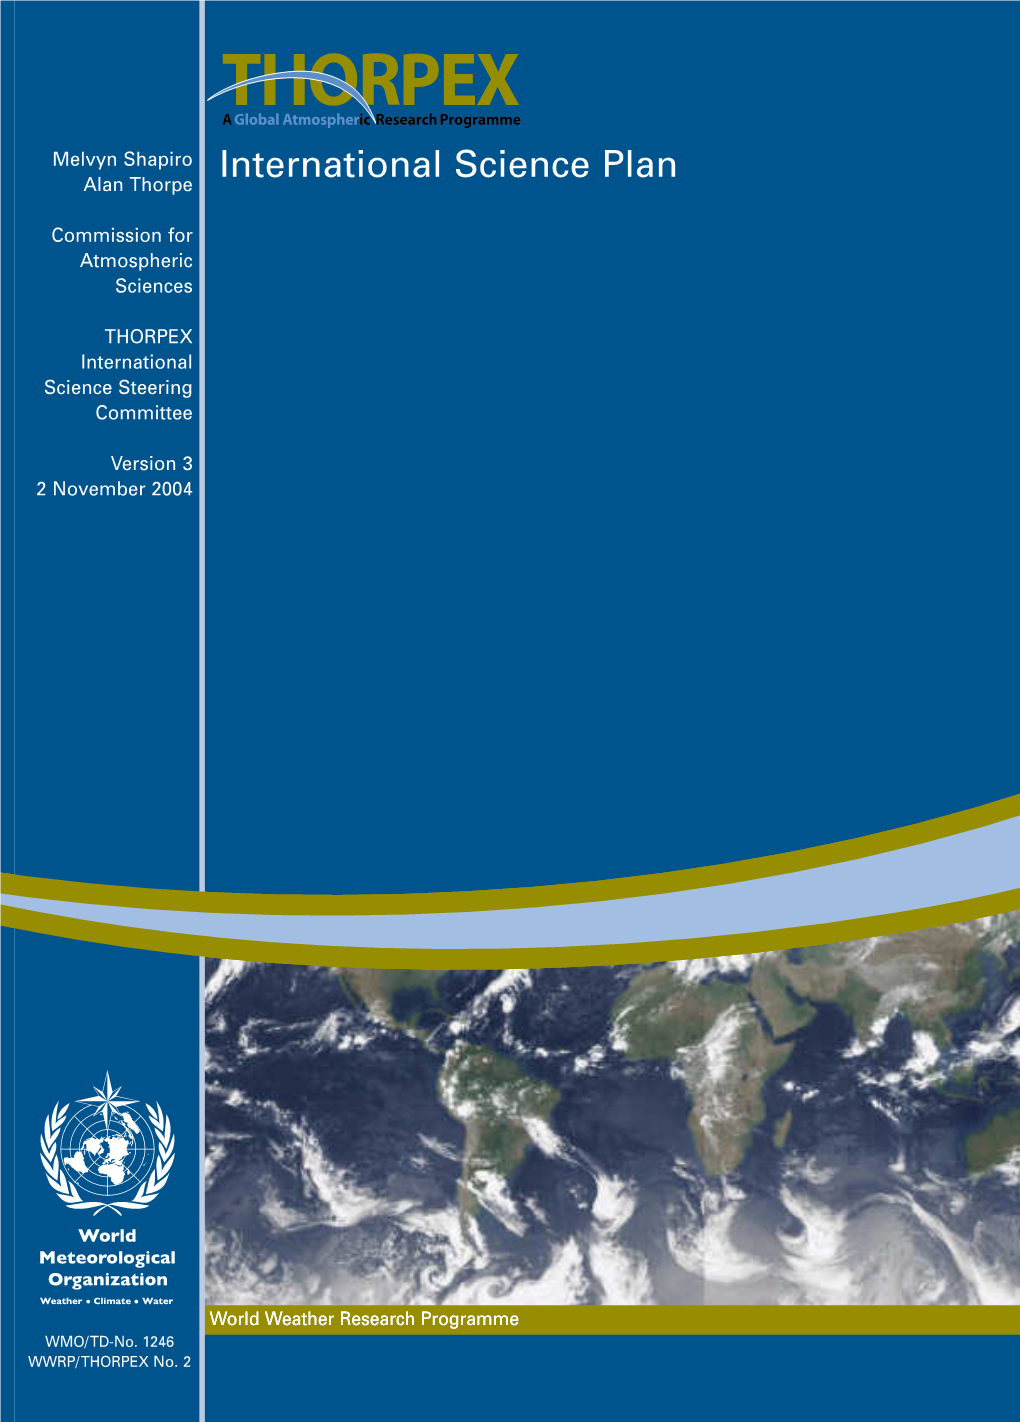 THORPEX International Science Plan1 Version III: 2 November 2004